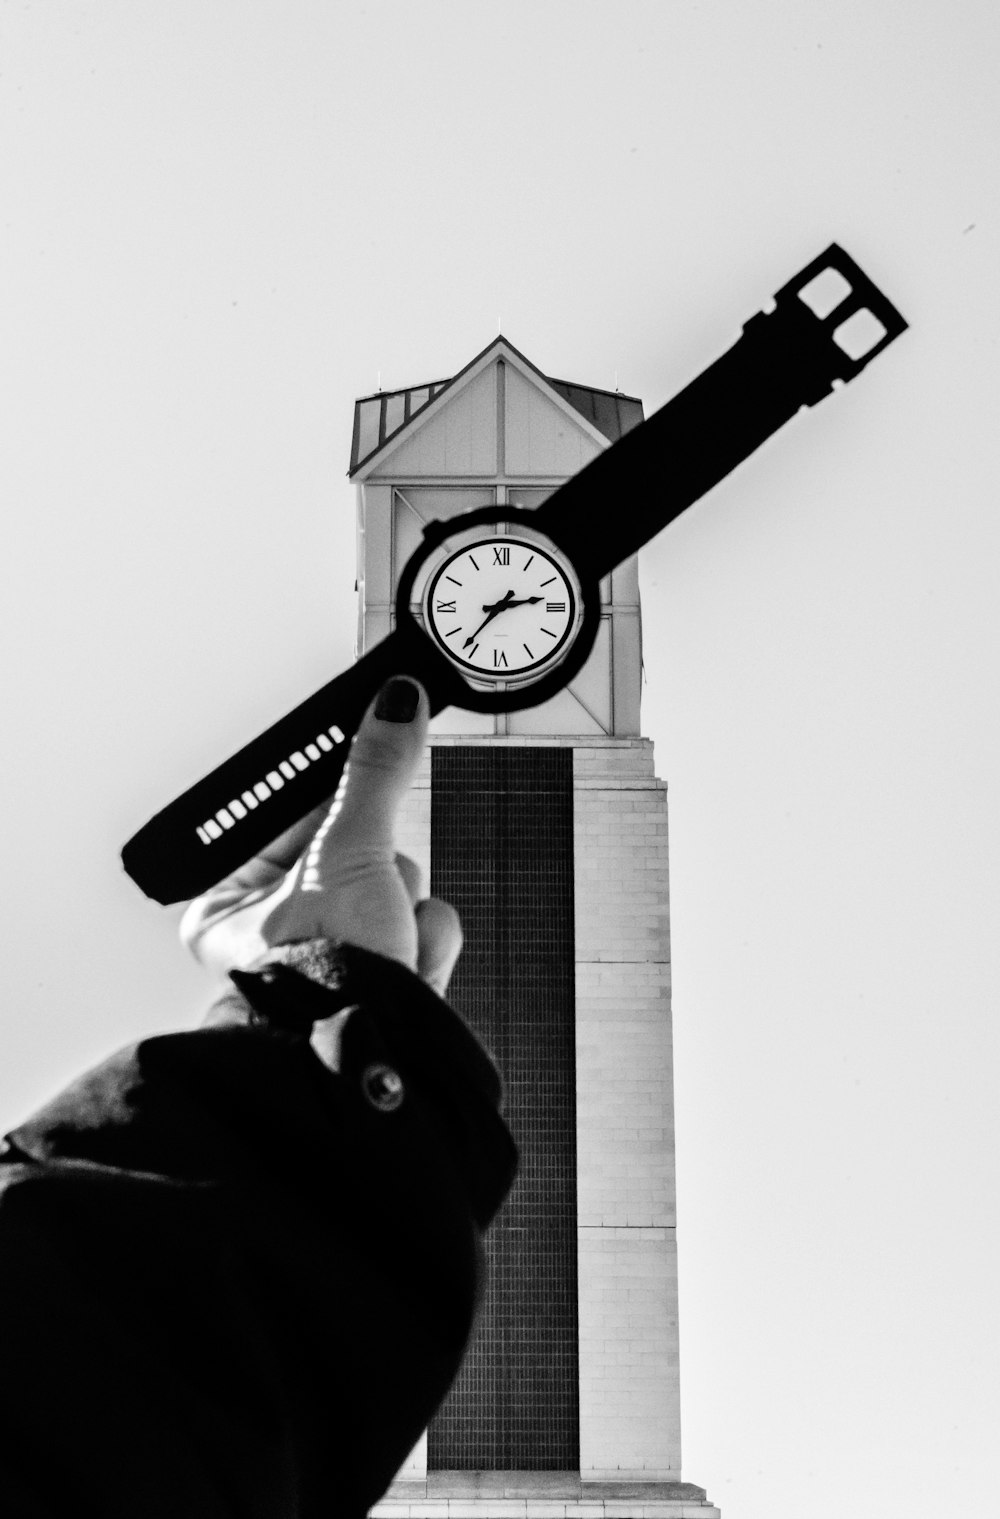 시계를 들고 있는 사람의 그레이스케일 사진